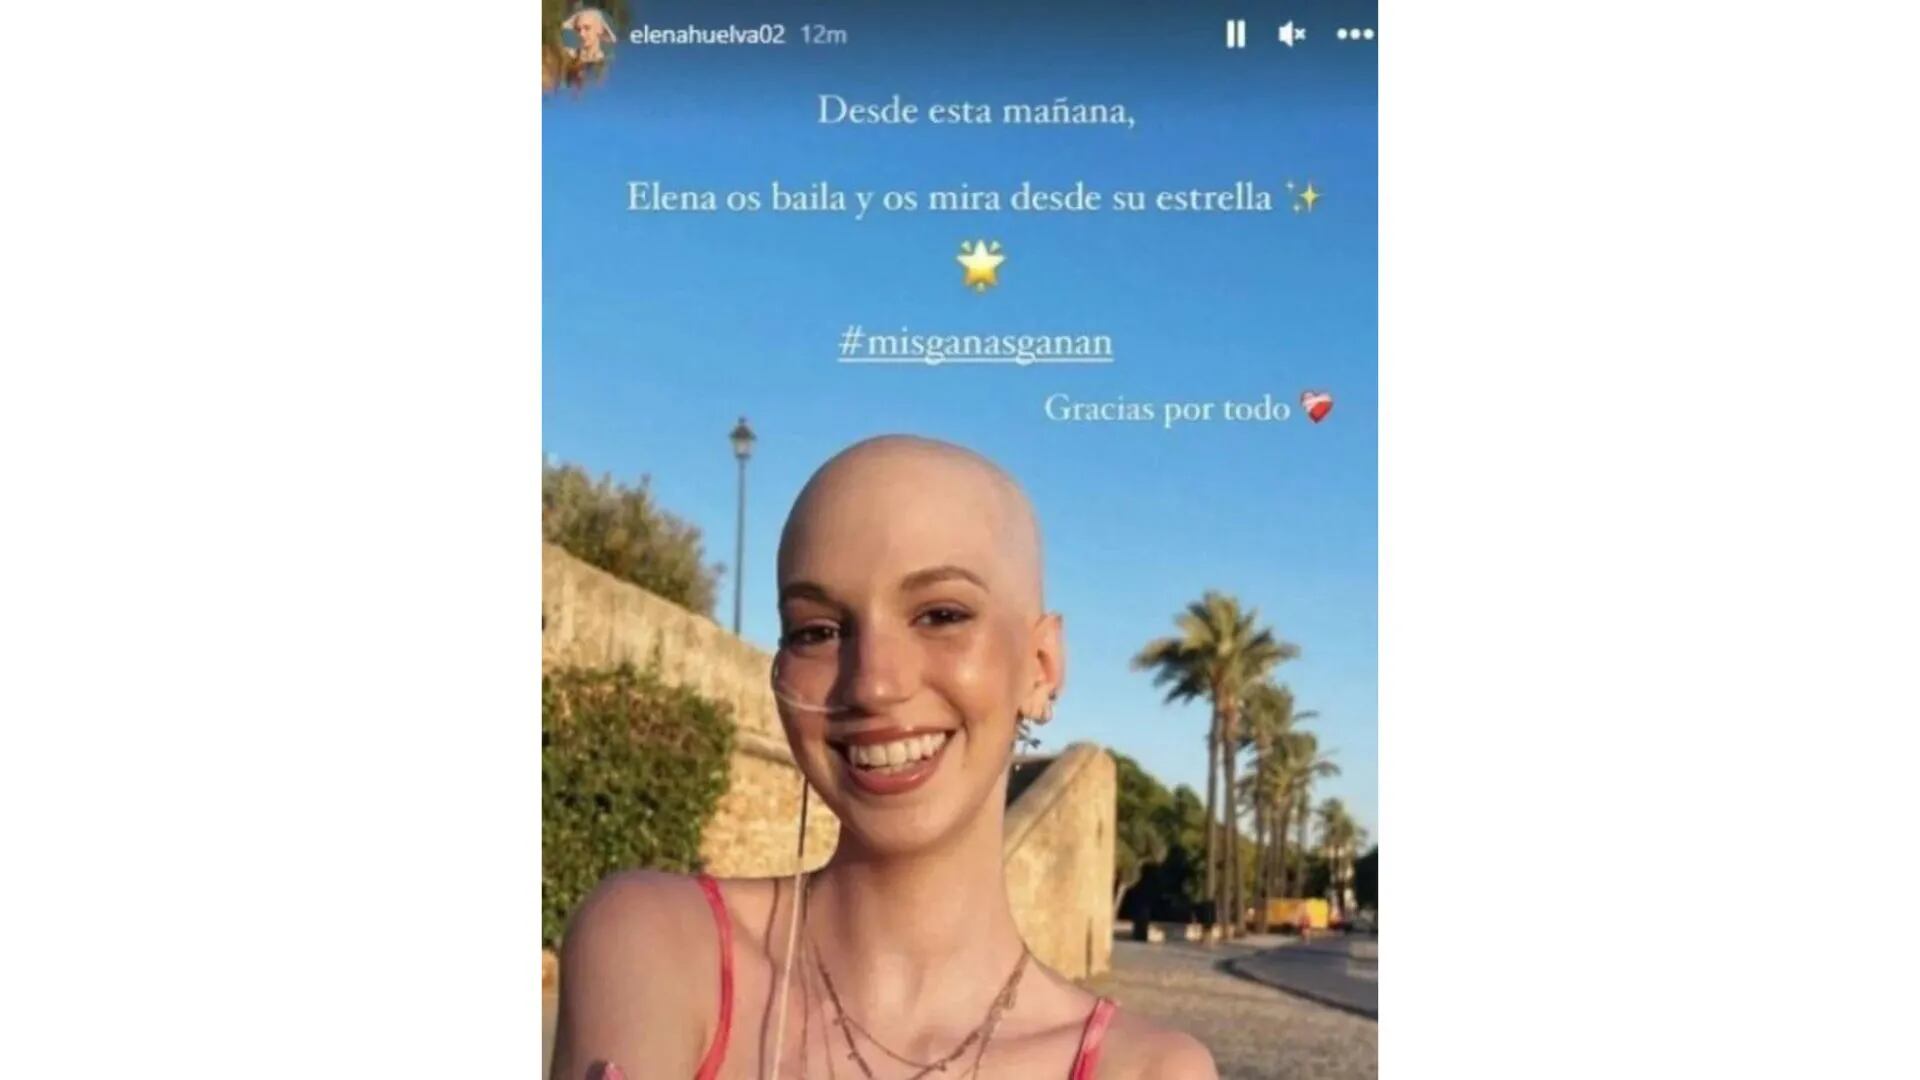 Murió Elena Huelva, la influencer de 20 años que compartía en Instagram su lucha contra el cáncer